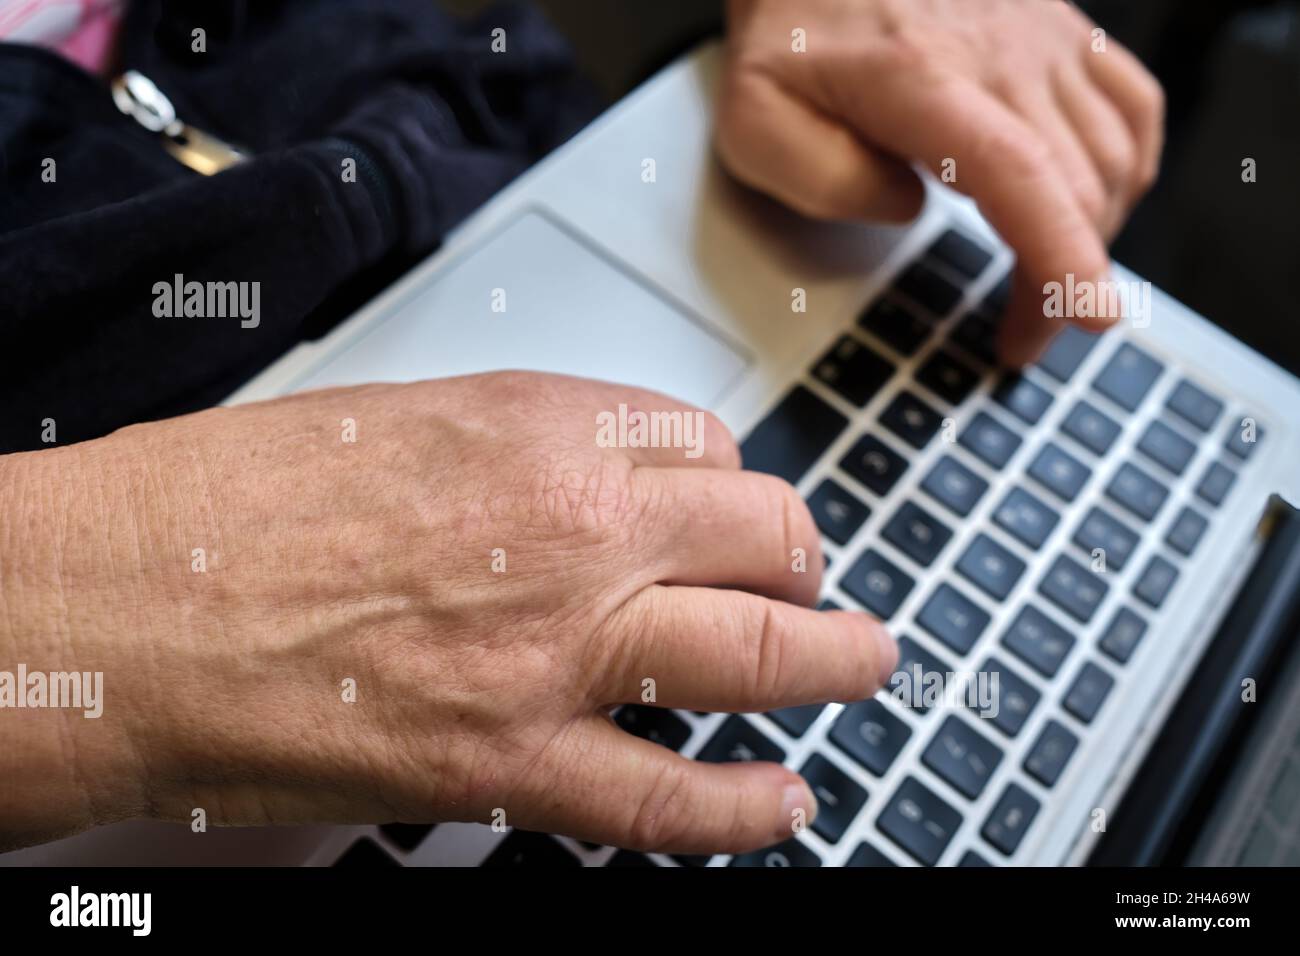 Hände an der Tastatur bei Arbeiten mit dem Computer Stock Photo